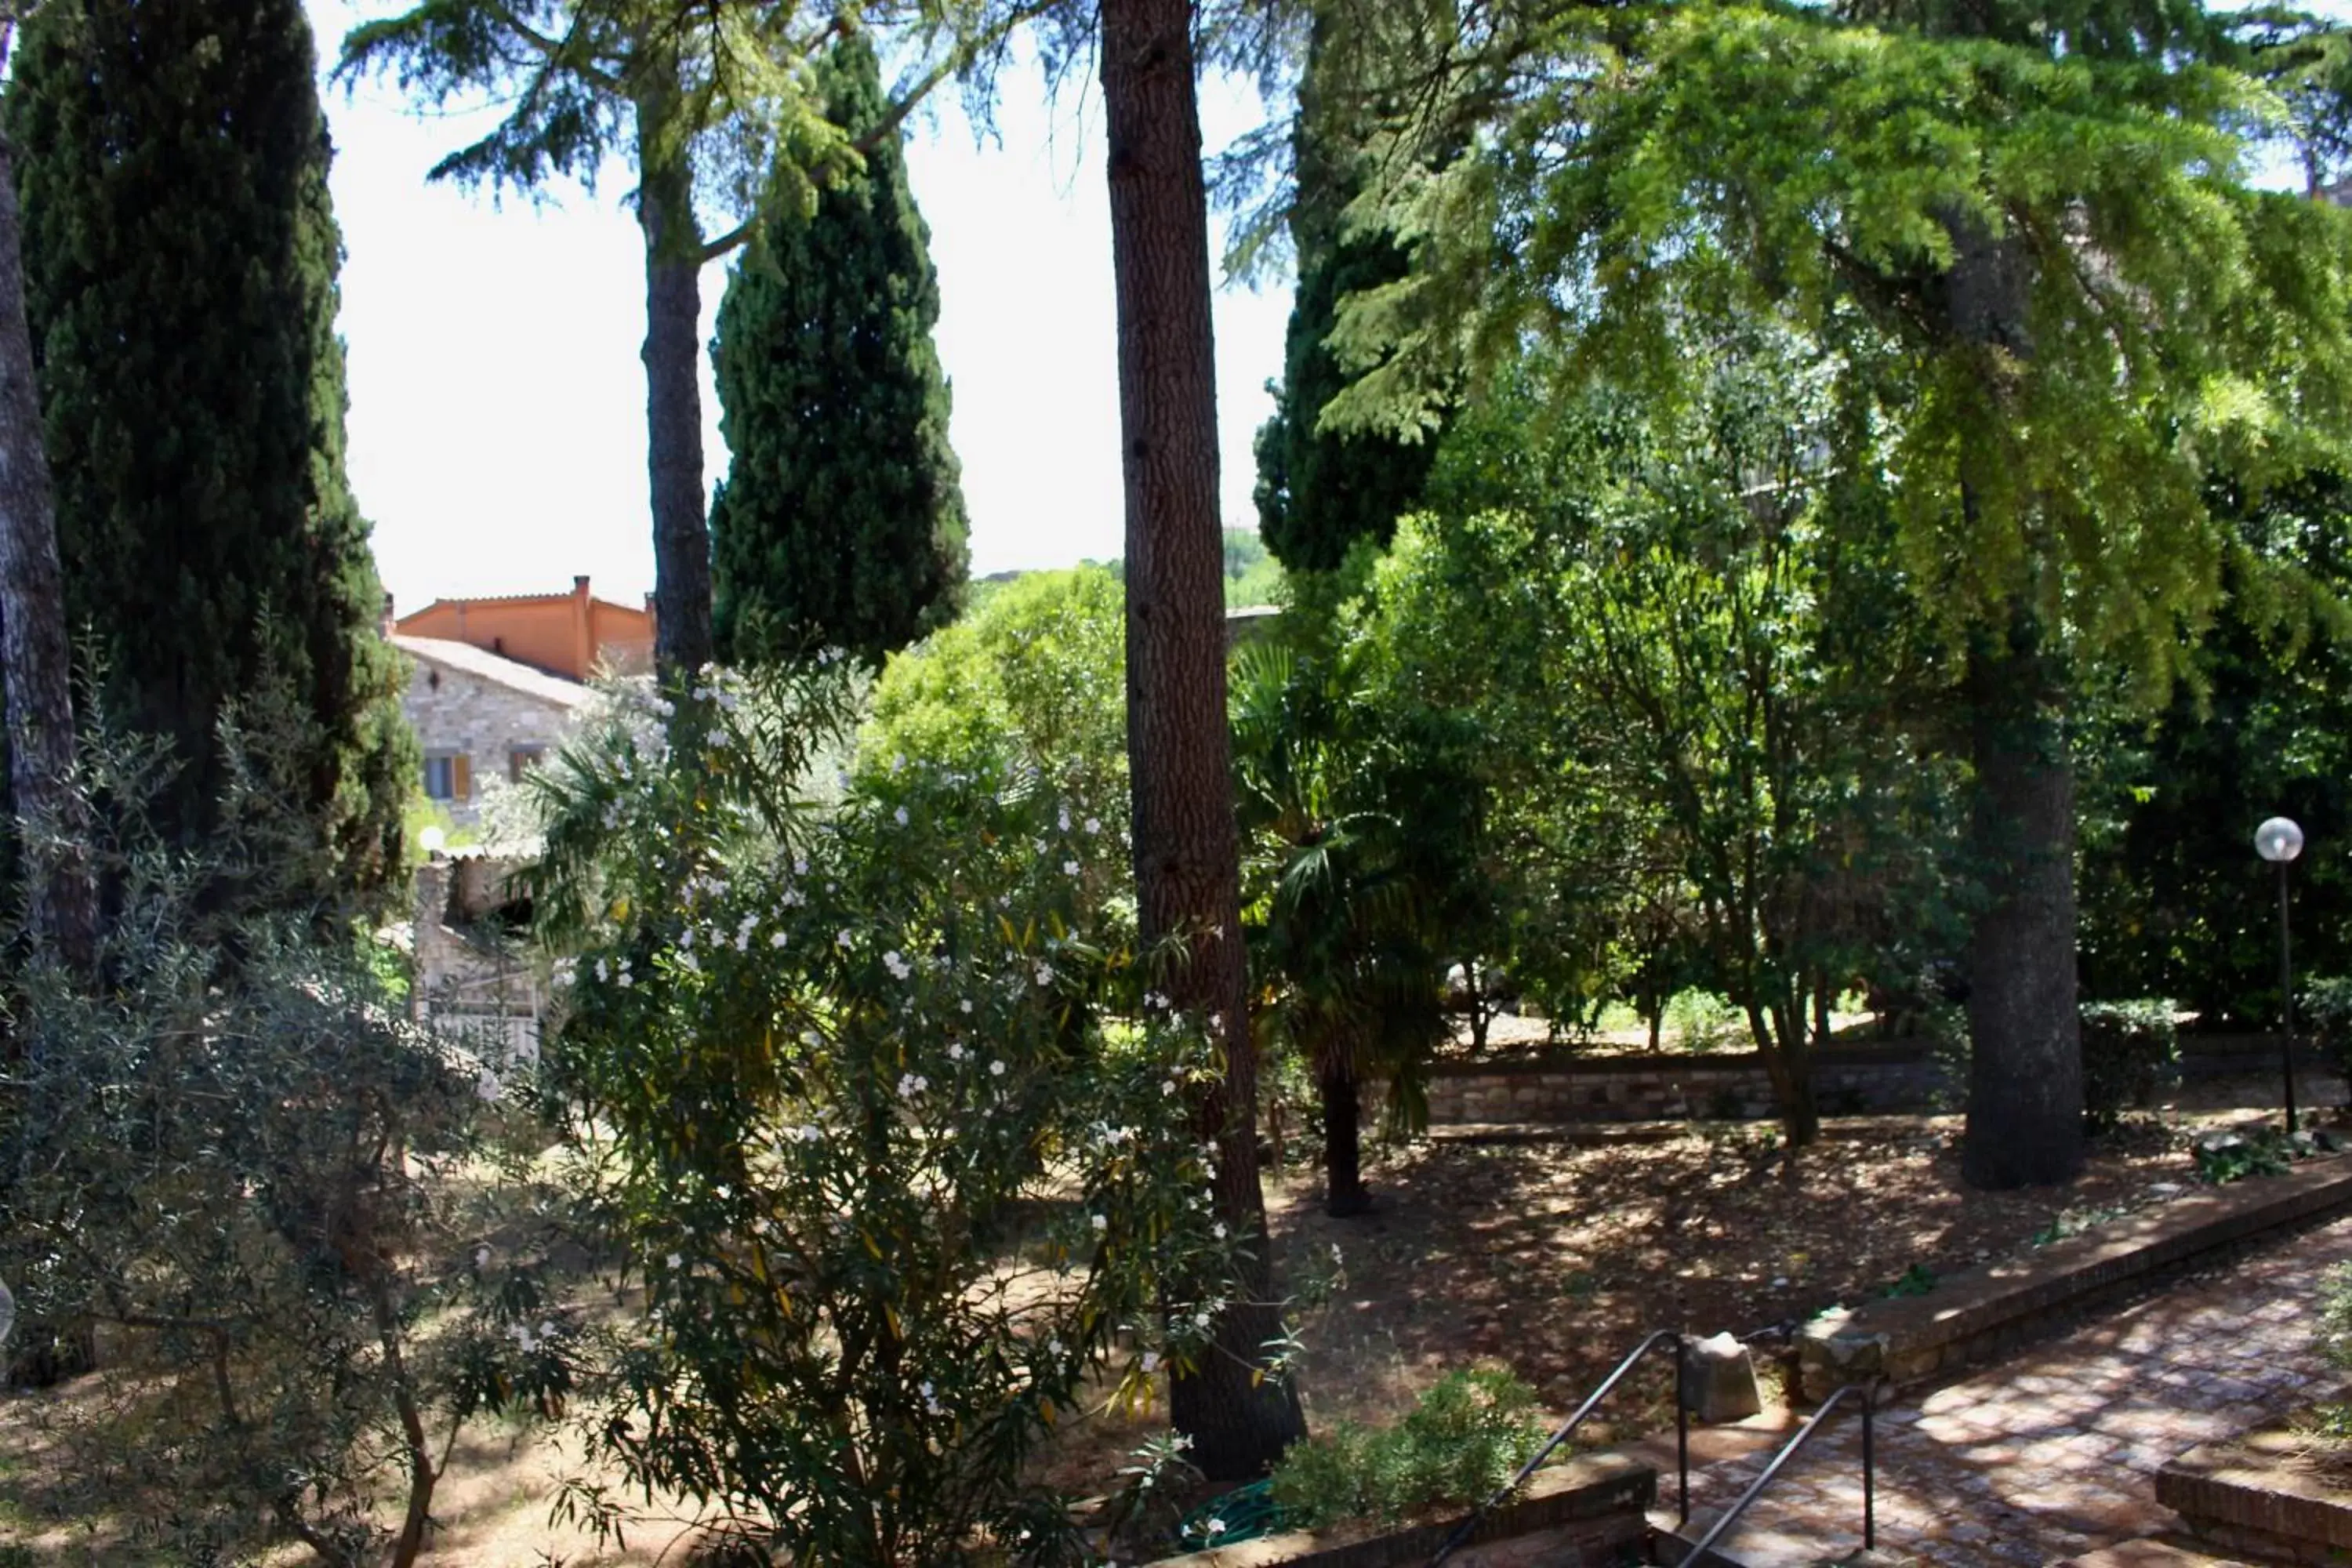 Garden view in Monastero SS. Annunziata